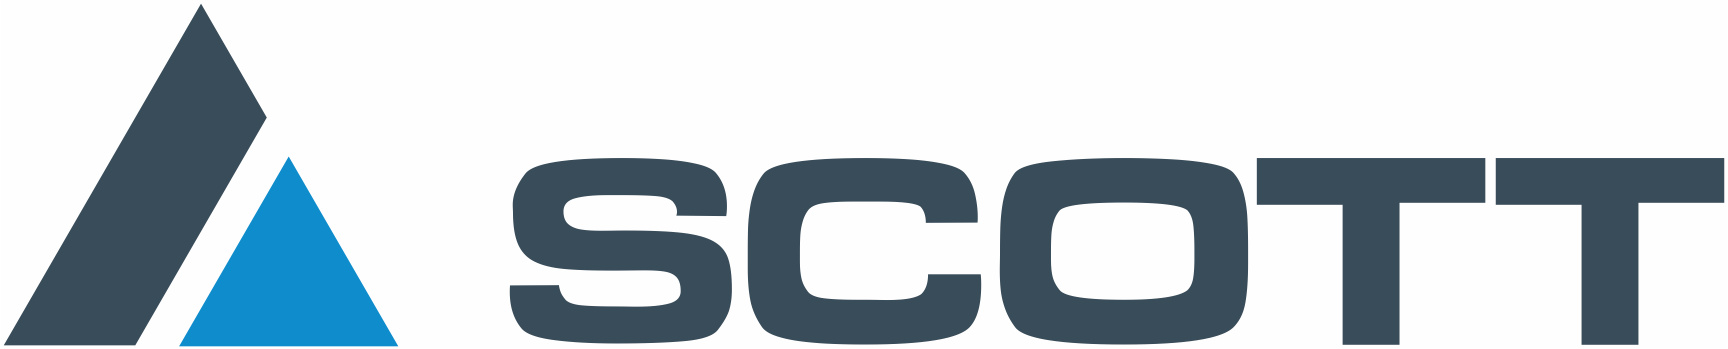 Scott-logo-HQ